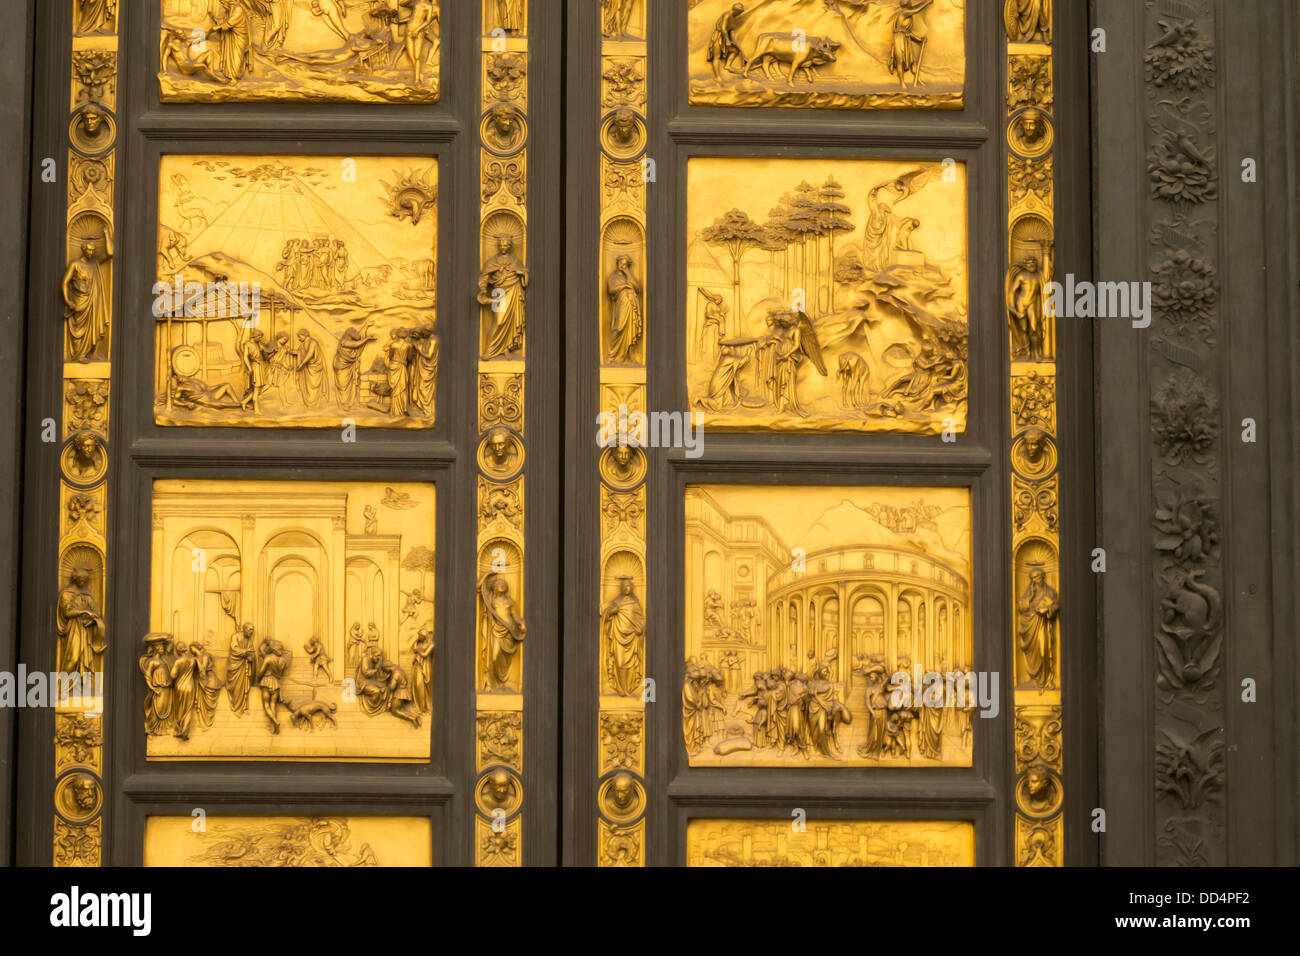 Gate of paradise immagini e fotografie stock ad alta risoluzione - Alamy